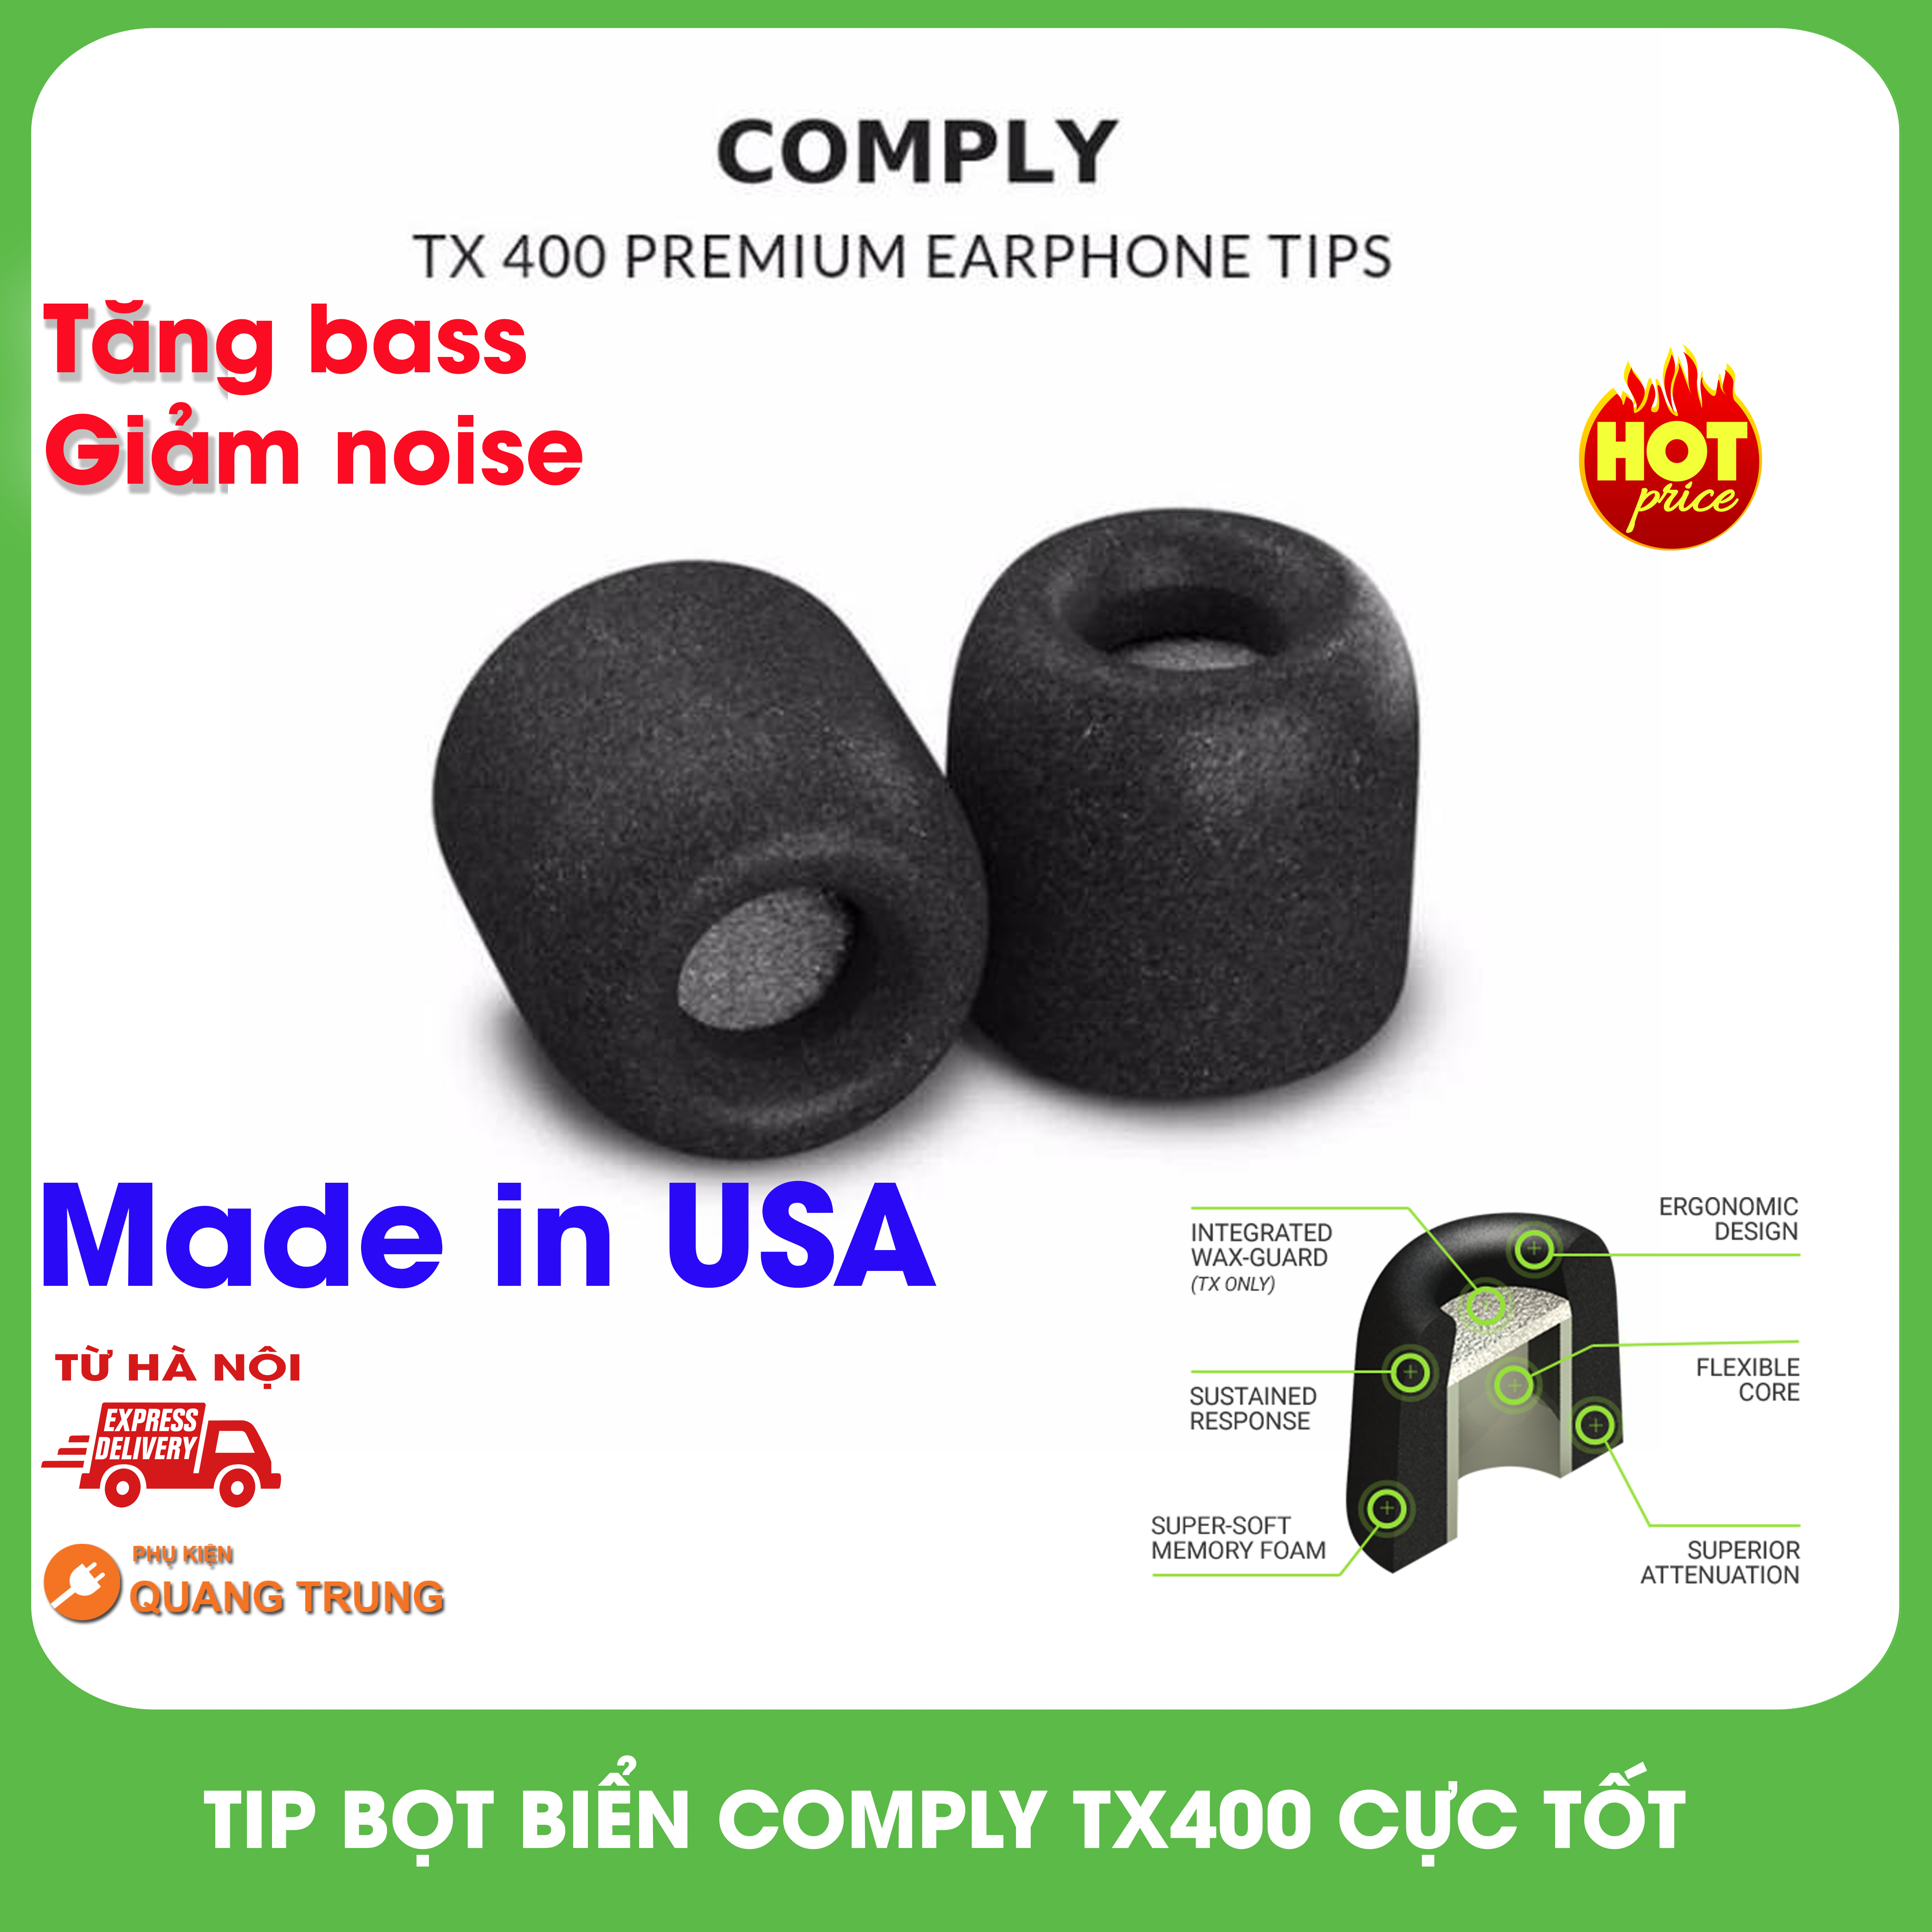 Tip bọt biển Comply TX400 chính hãng USA,tăng bass cực ngon